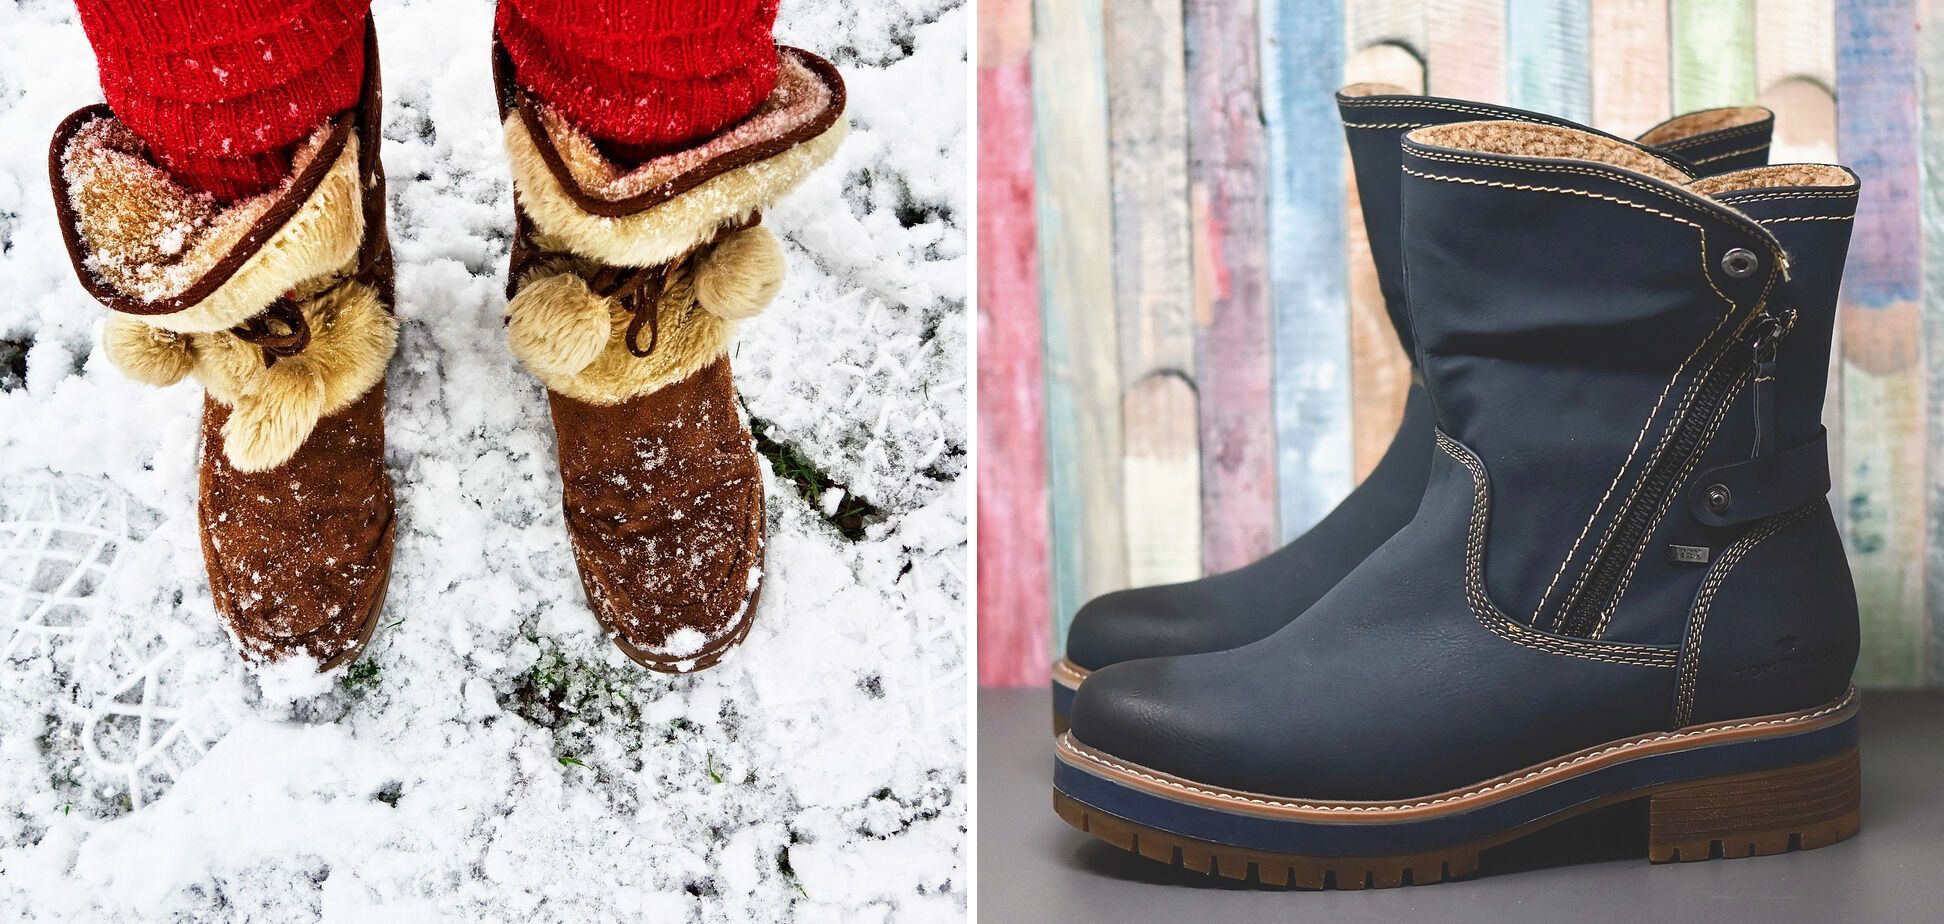 Защиту от влаги зимой обеспечивает хорошая прошивка и материал обуви.